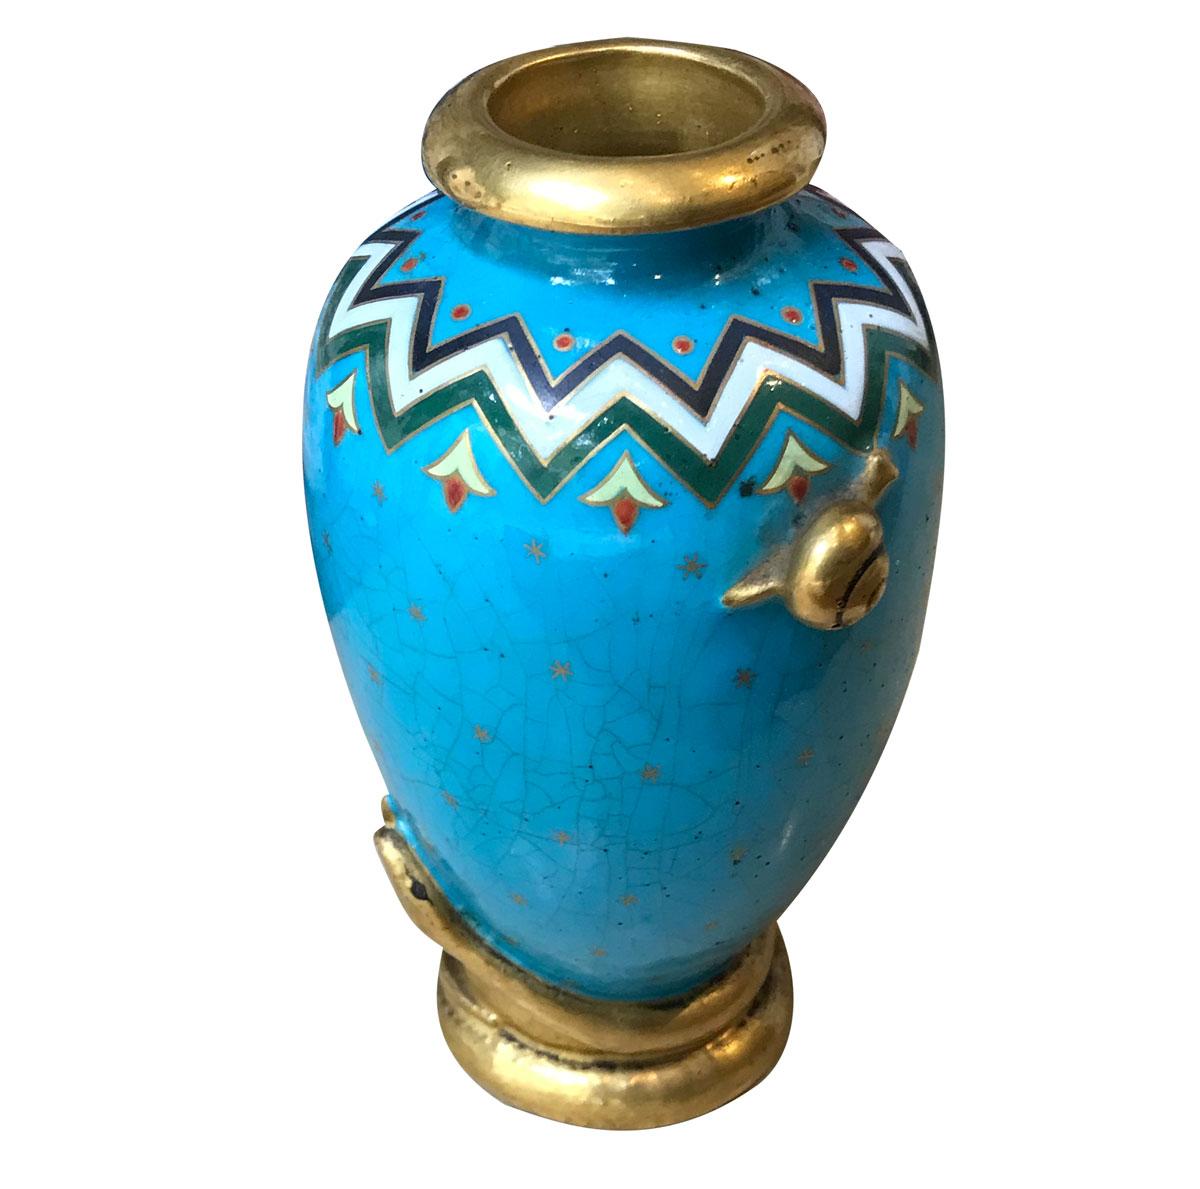 Petit vase en porcelaine de style japonais, élégant et raffiné. Pièce du mouvement esthétique avec un fond bleu et des motifs géométriques colorés typiques des dessins de Christophe Dresser, rehaussés de petites étoiles sur tout le vase.
Elle est